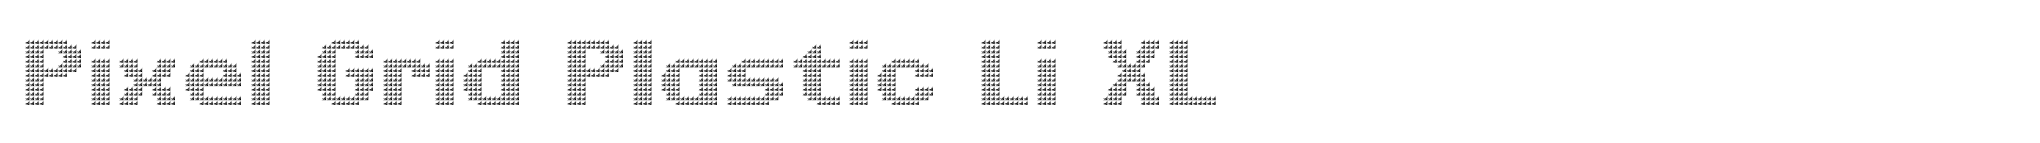 Pixel Grid Plastic Li XL image